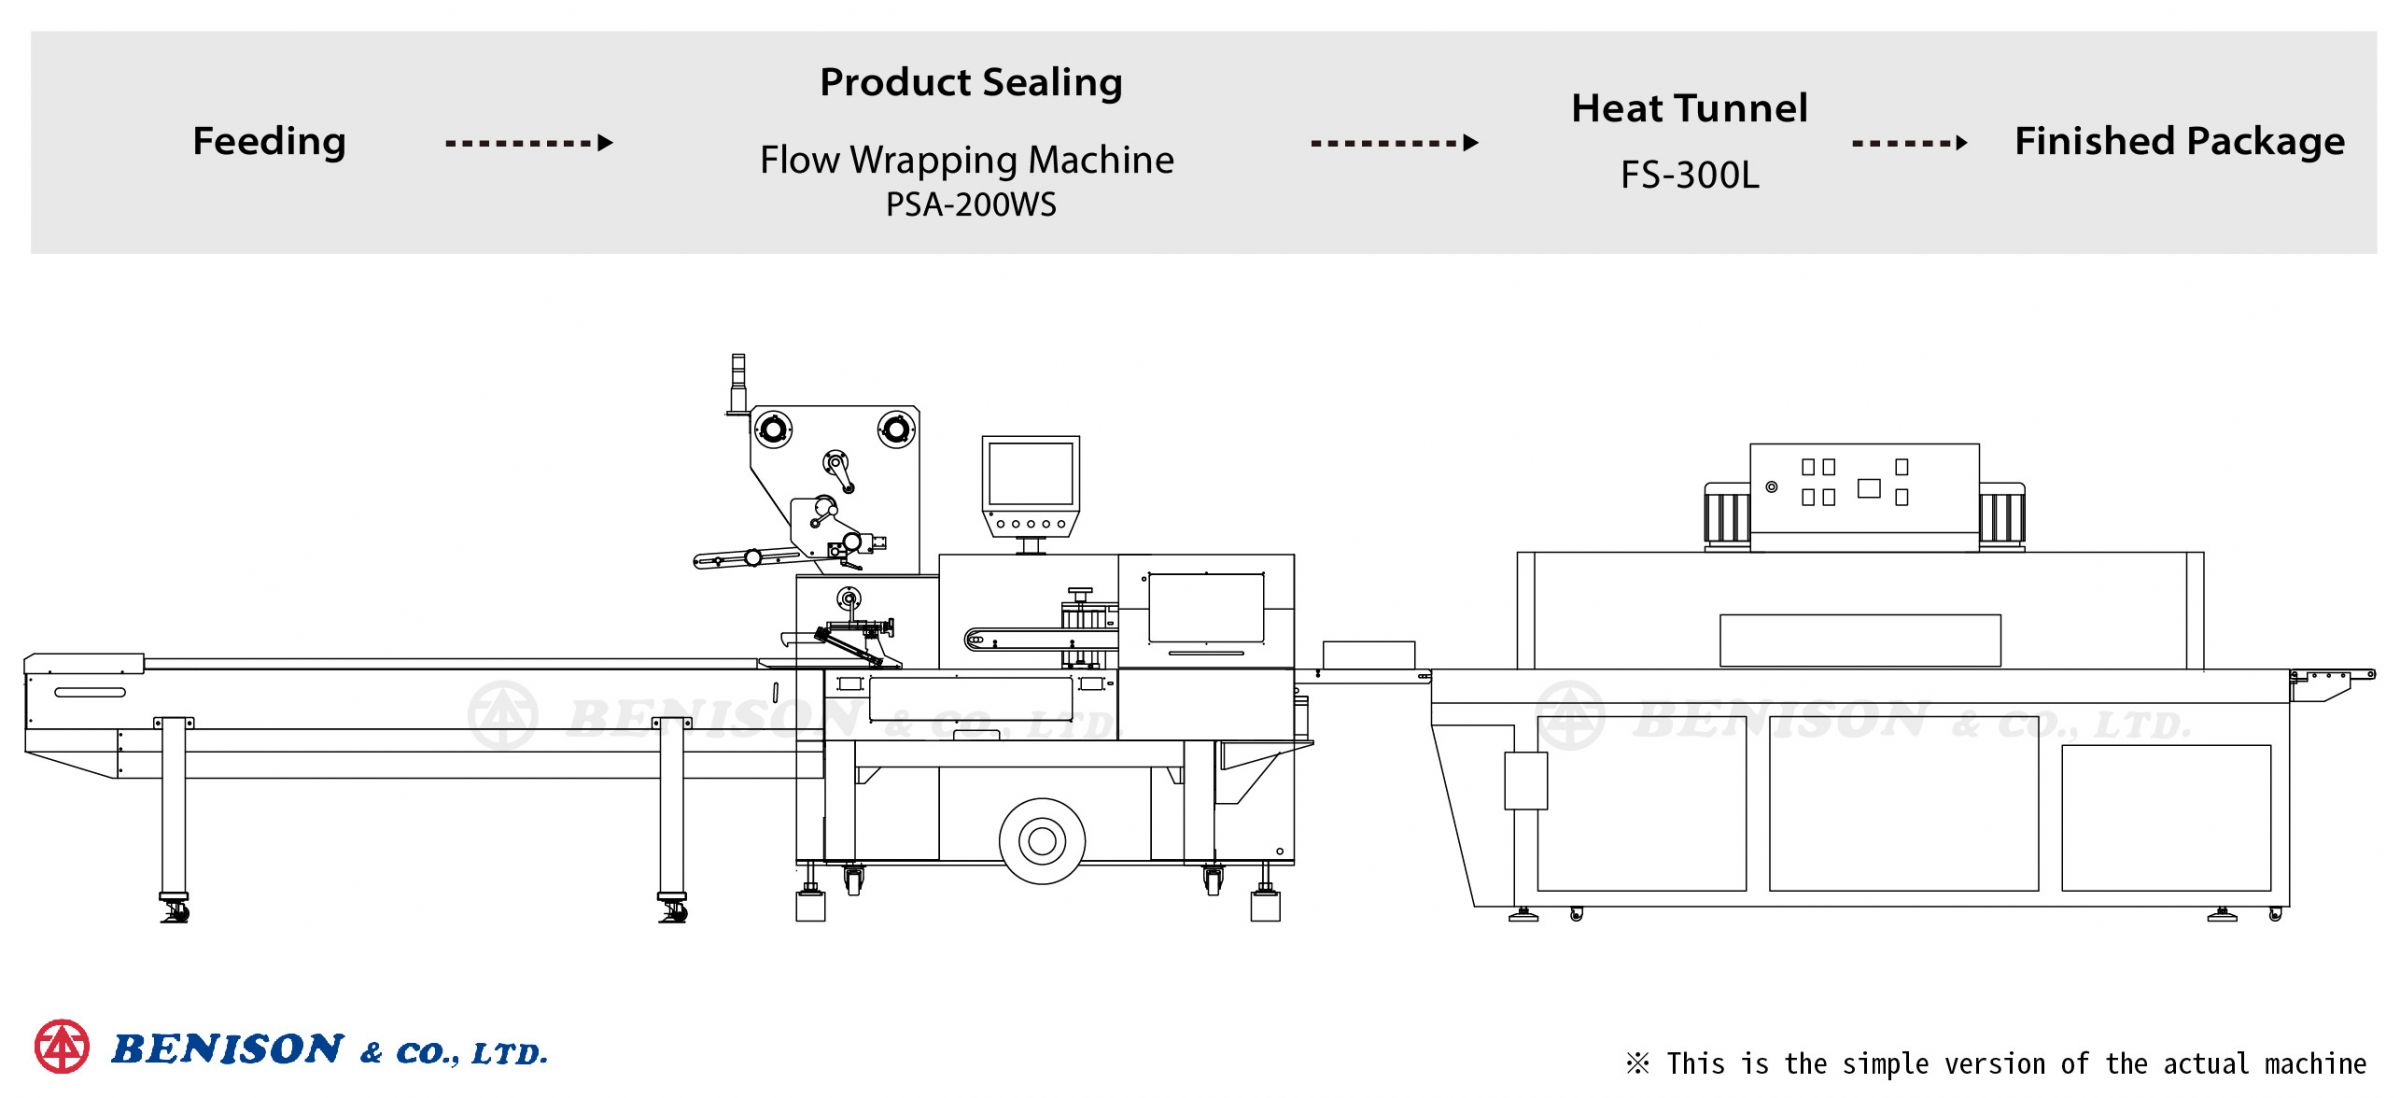 电源开关盖包装解决方案：枕式包装机(收缩型), PSA-200WS + 热收缩炉, FS-300L